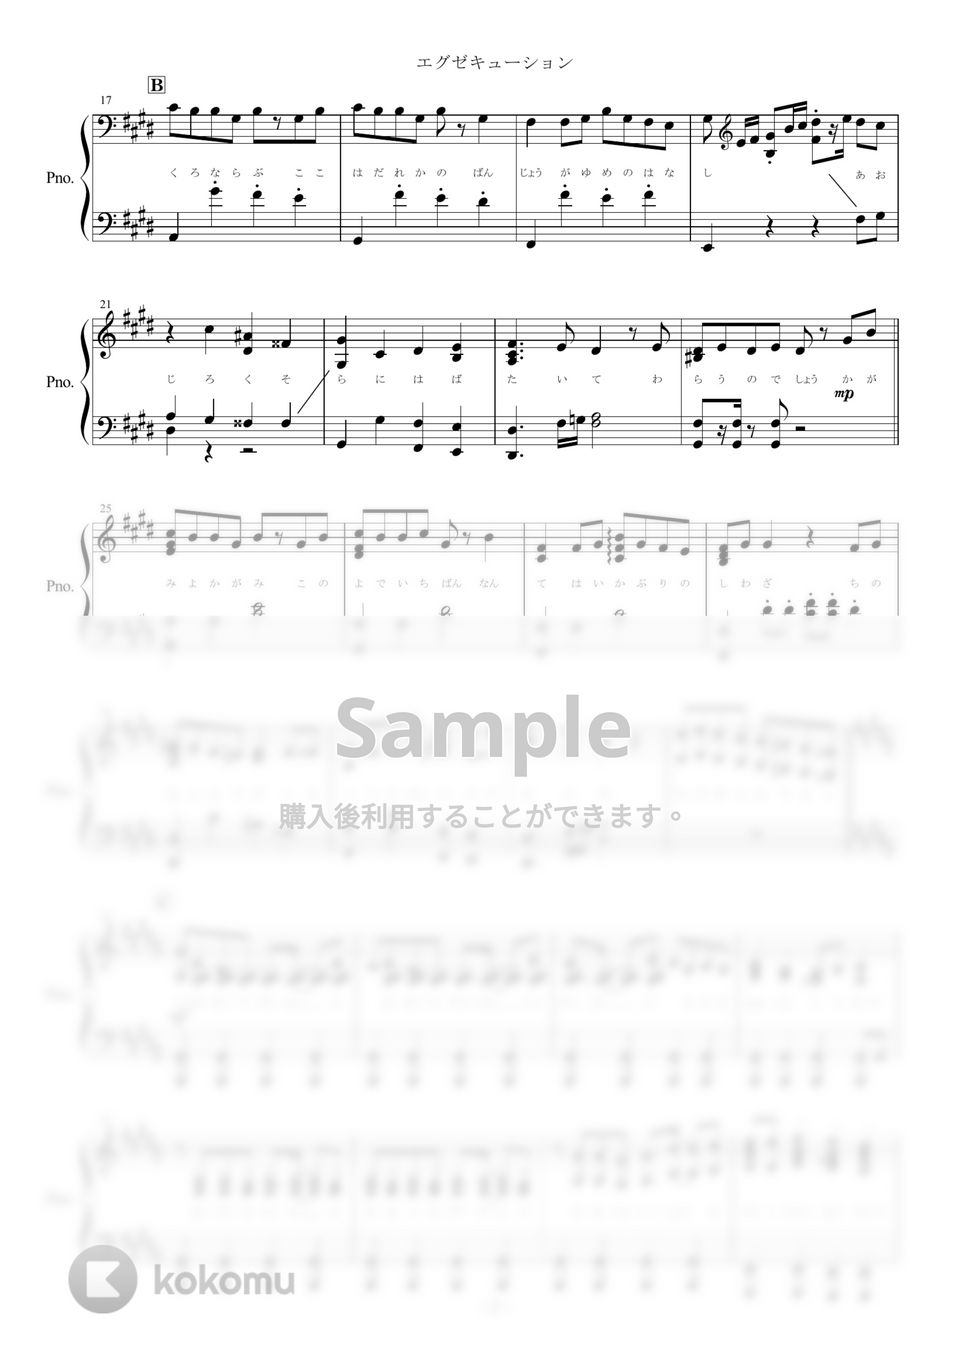 まふまふ - エグゼキューション (ピアノ楽譜) by yoshi